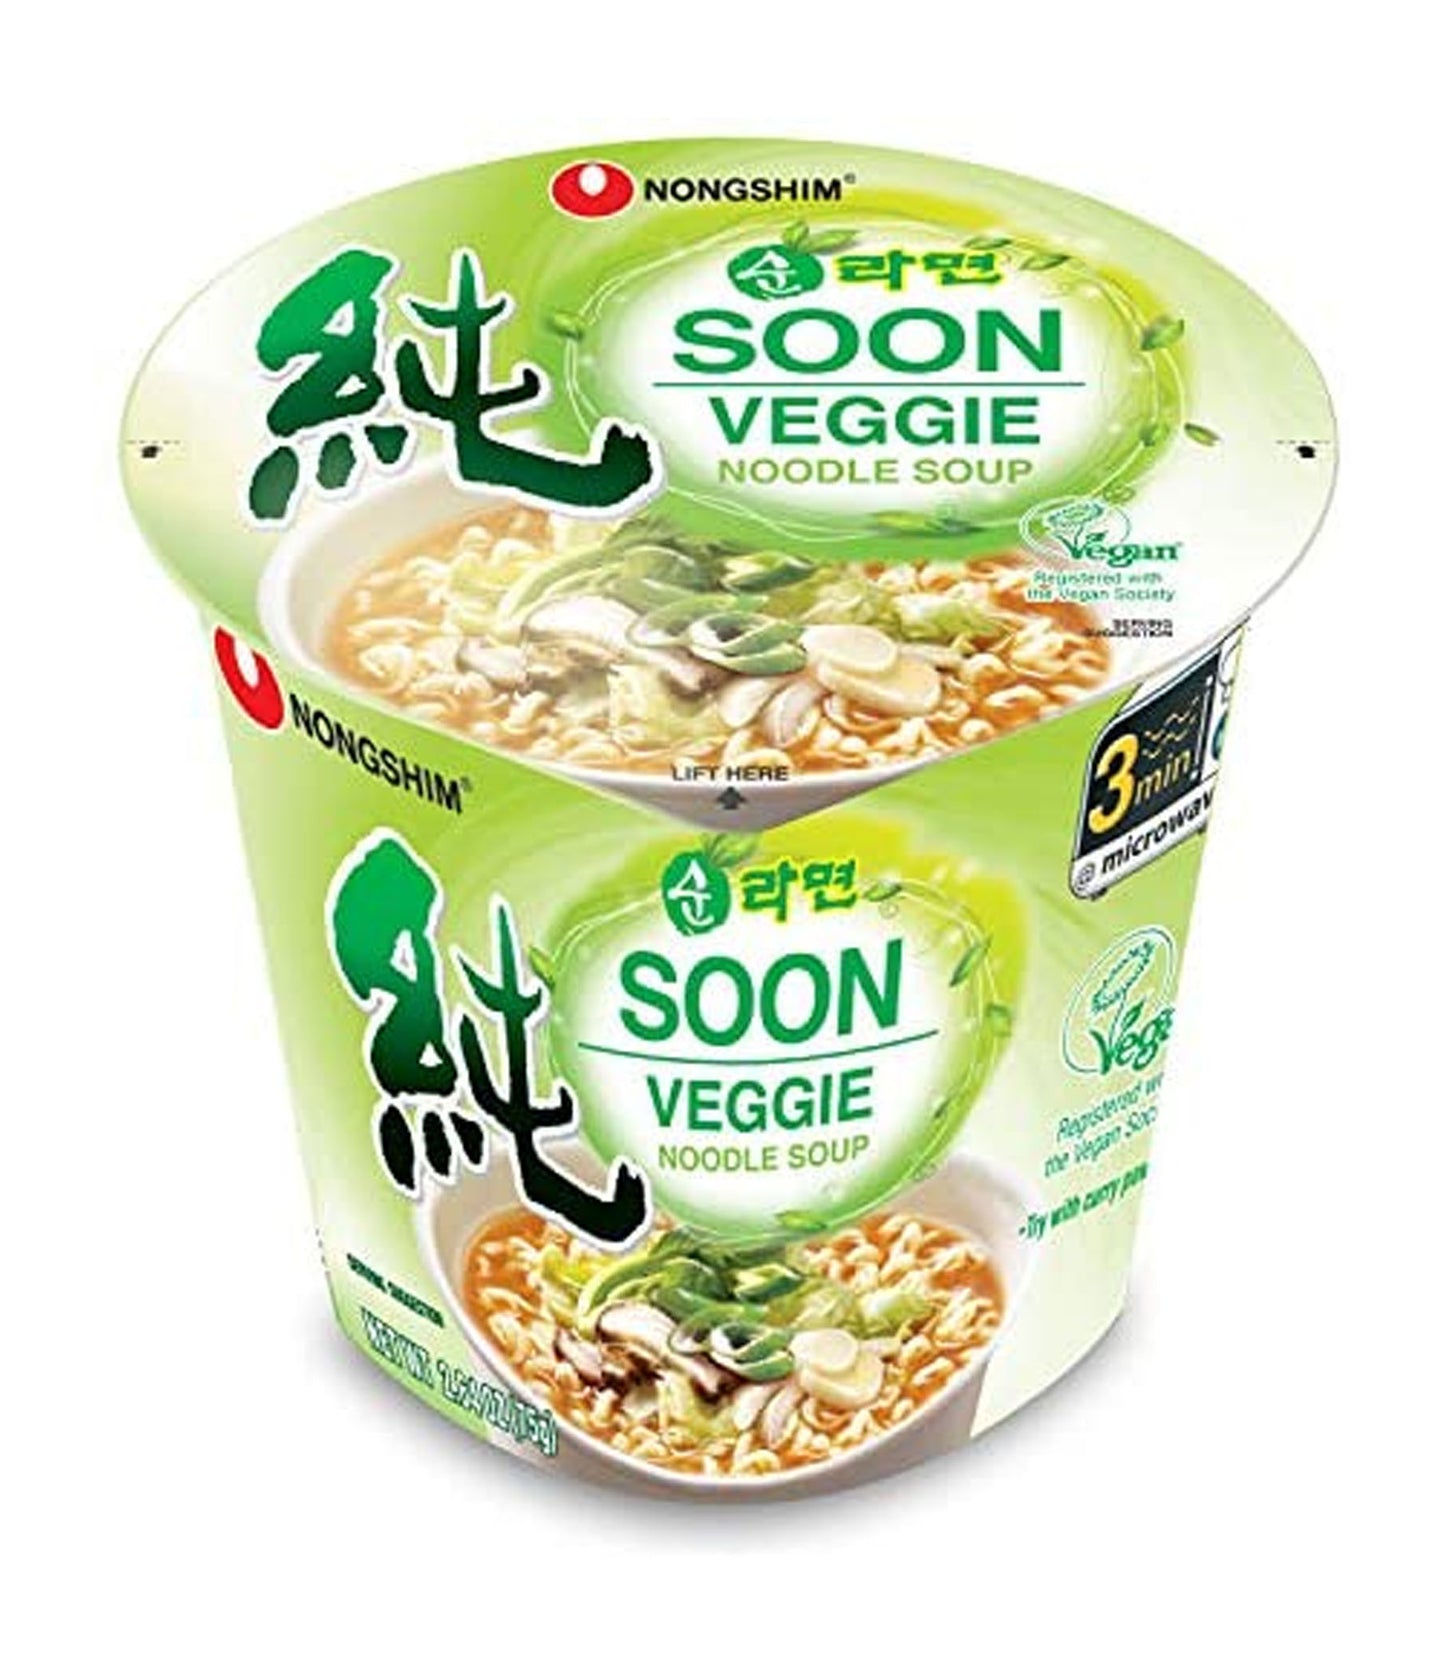 Nongshim – Soon Veggie Noodle Soup 75g